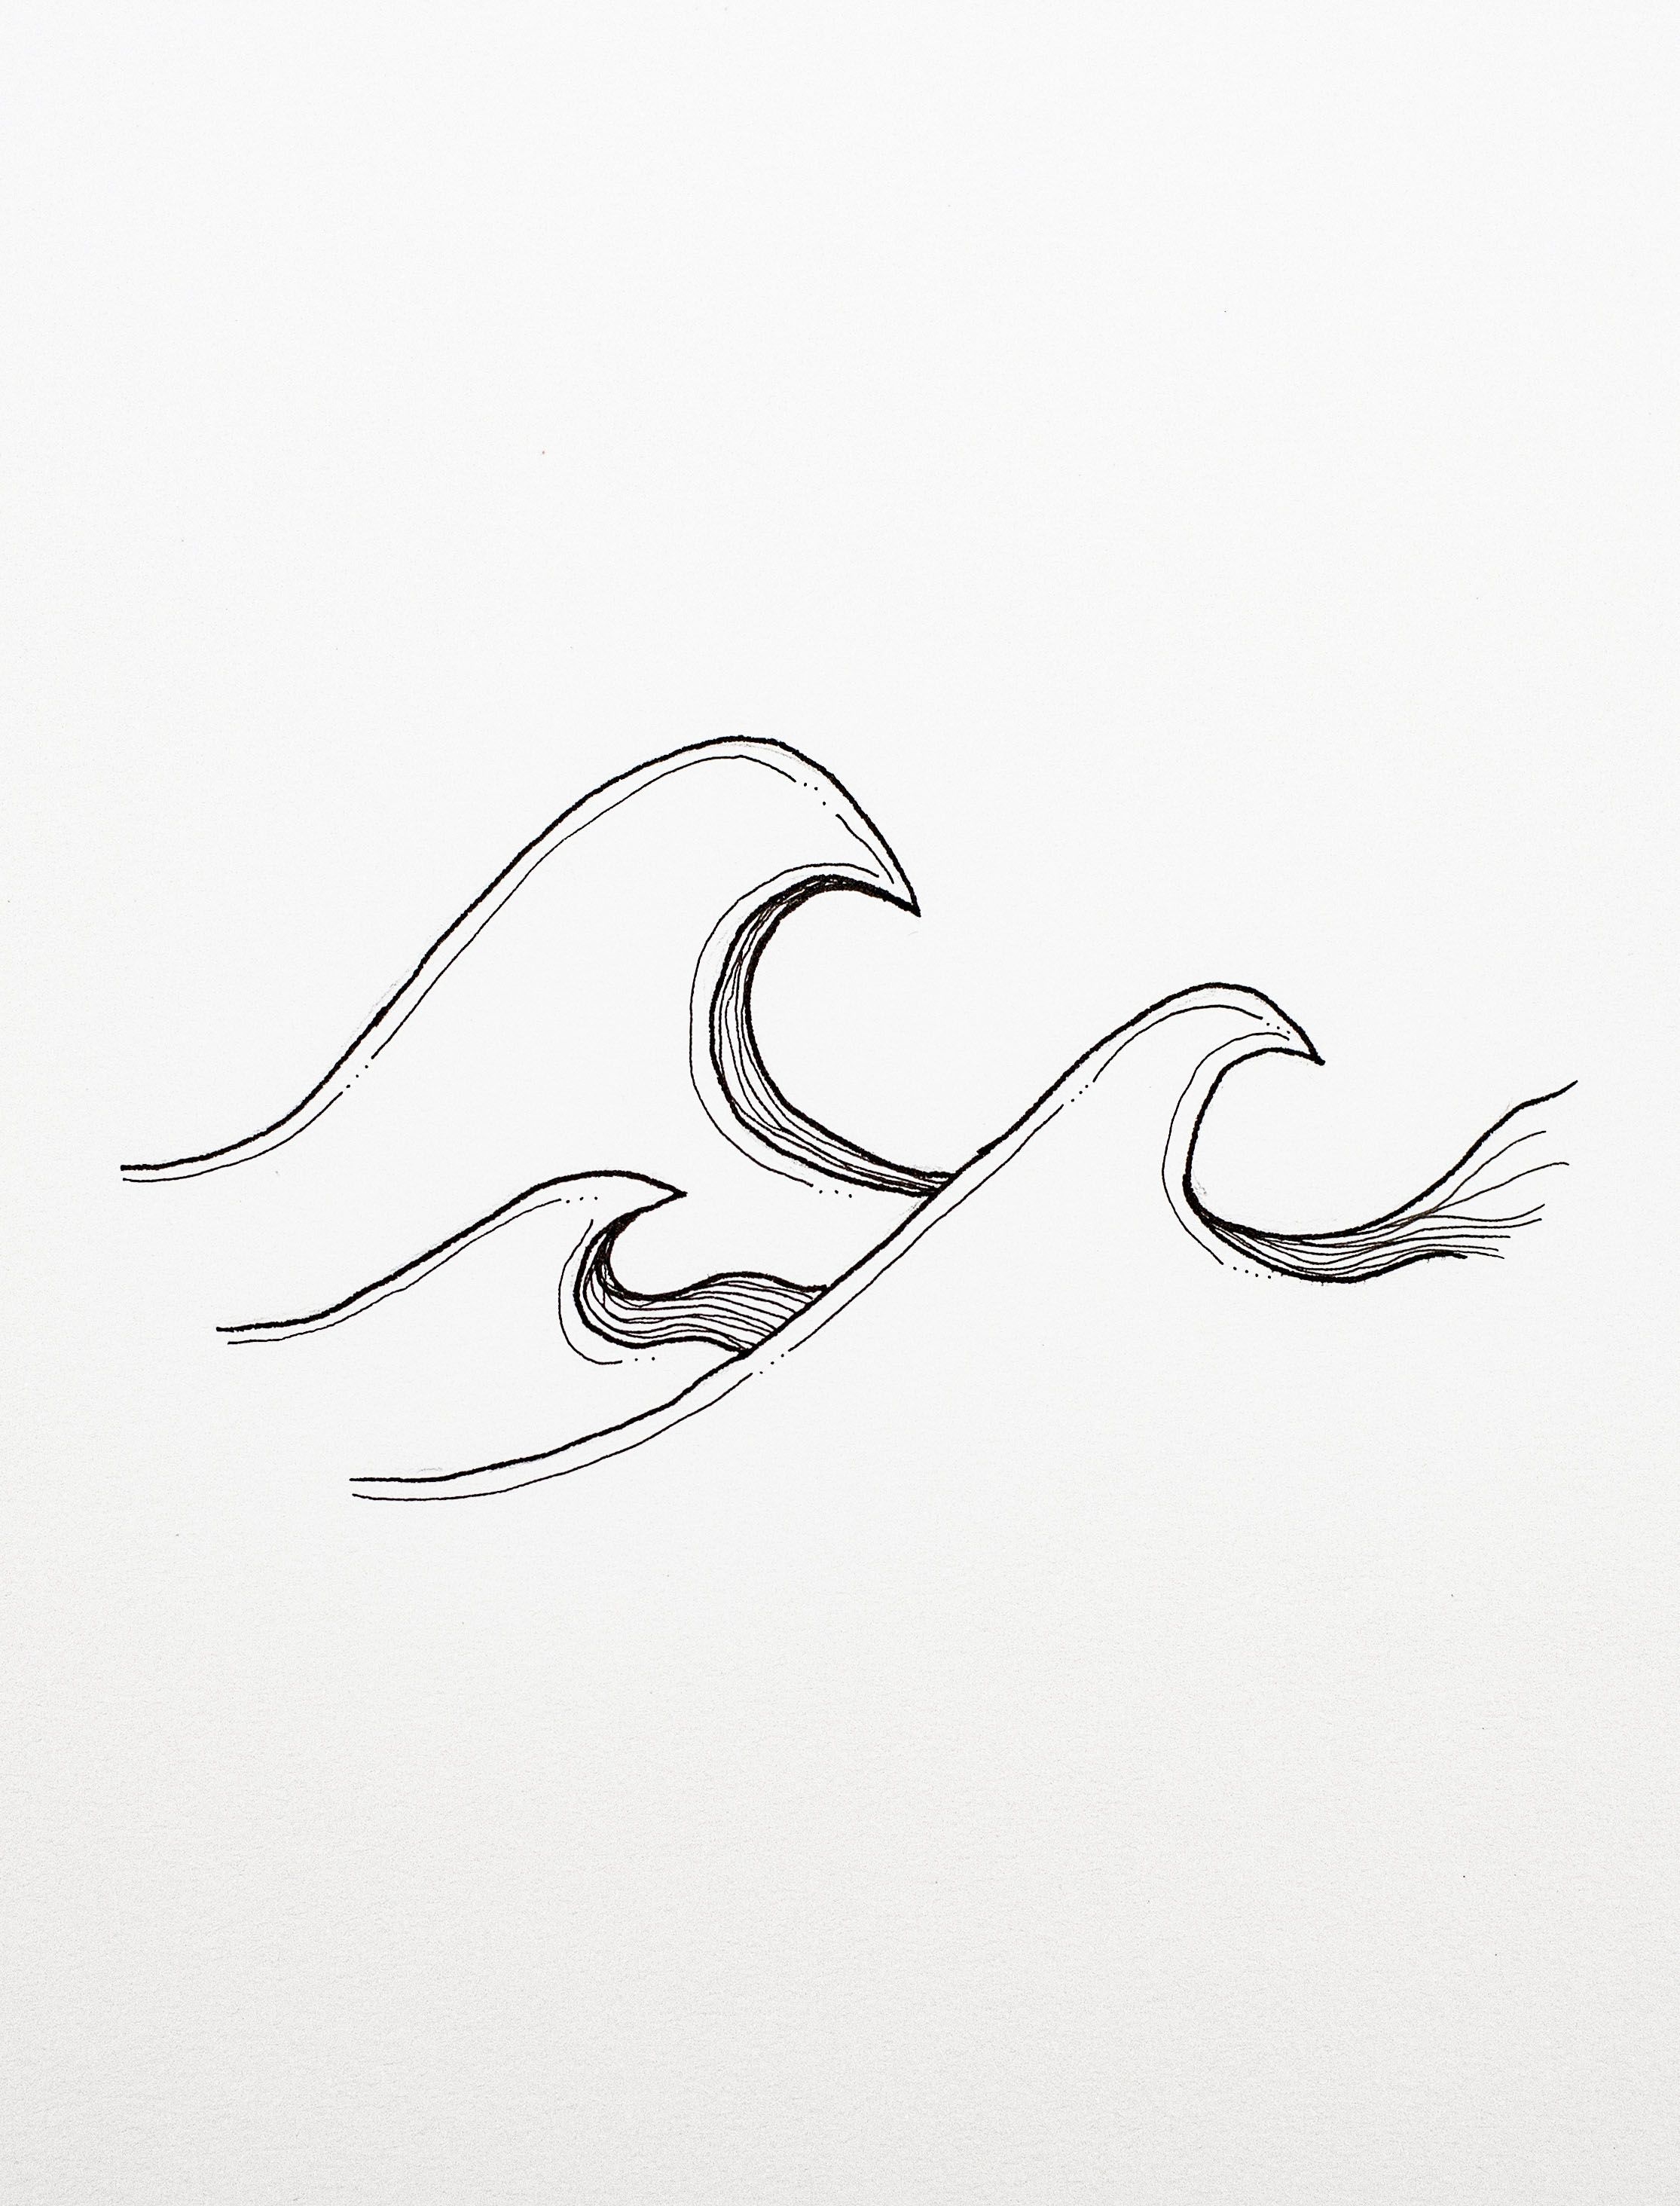 Ocean Waves Drawing Detailed Sketch